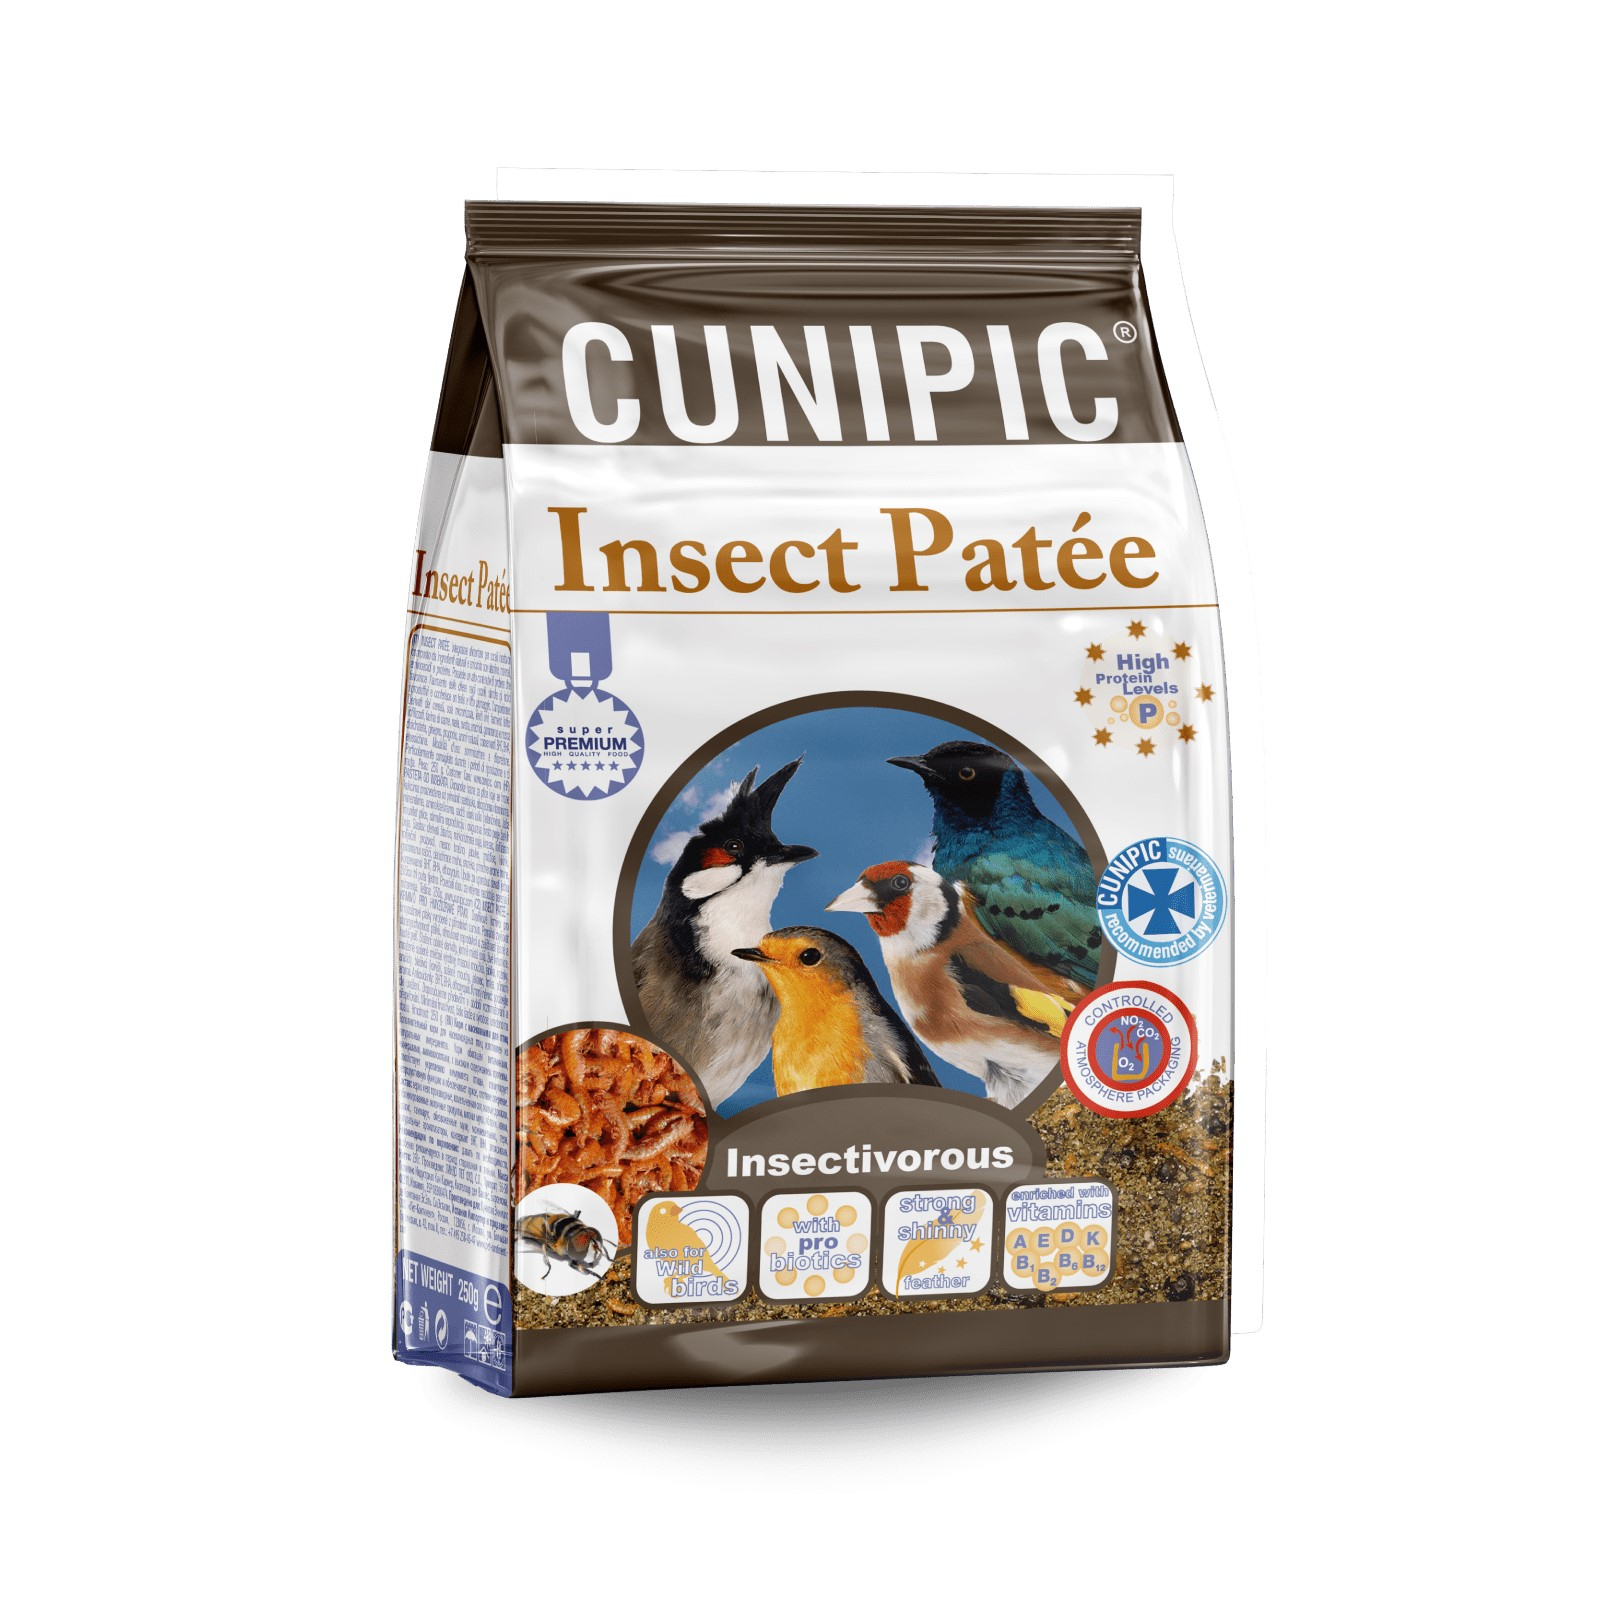 Cunipic Insect Patée pasta de cría con insectos para pájaros